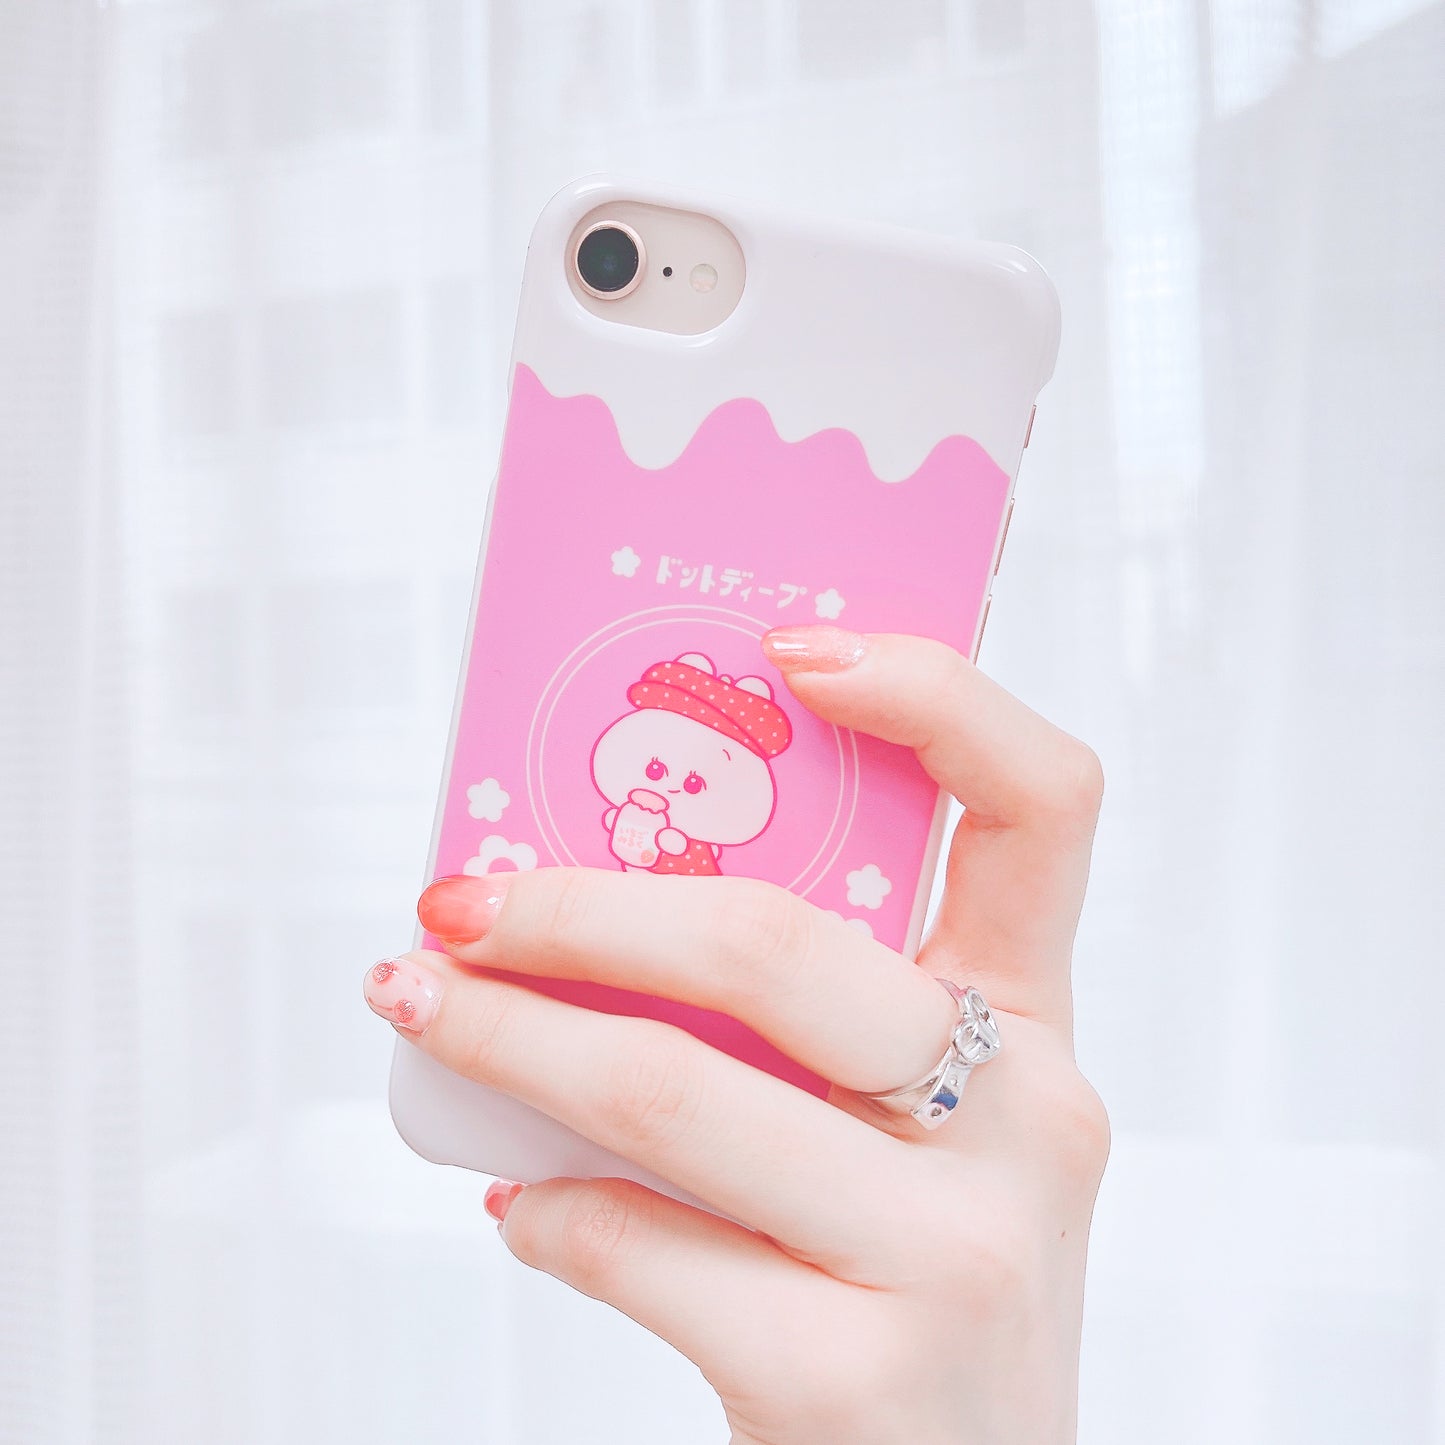 [Asamimi-chan] Étui pour smartphone compatible avec presque tous les modèles (Ichigo Milk) Rakuten Mobile Series [Fabriqué sur commande]